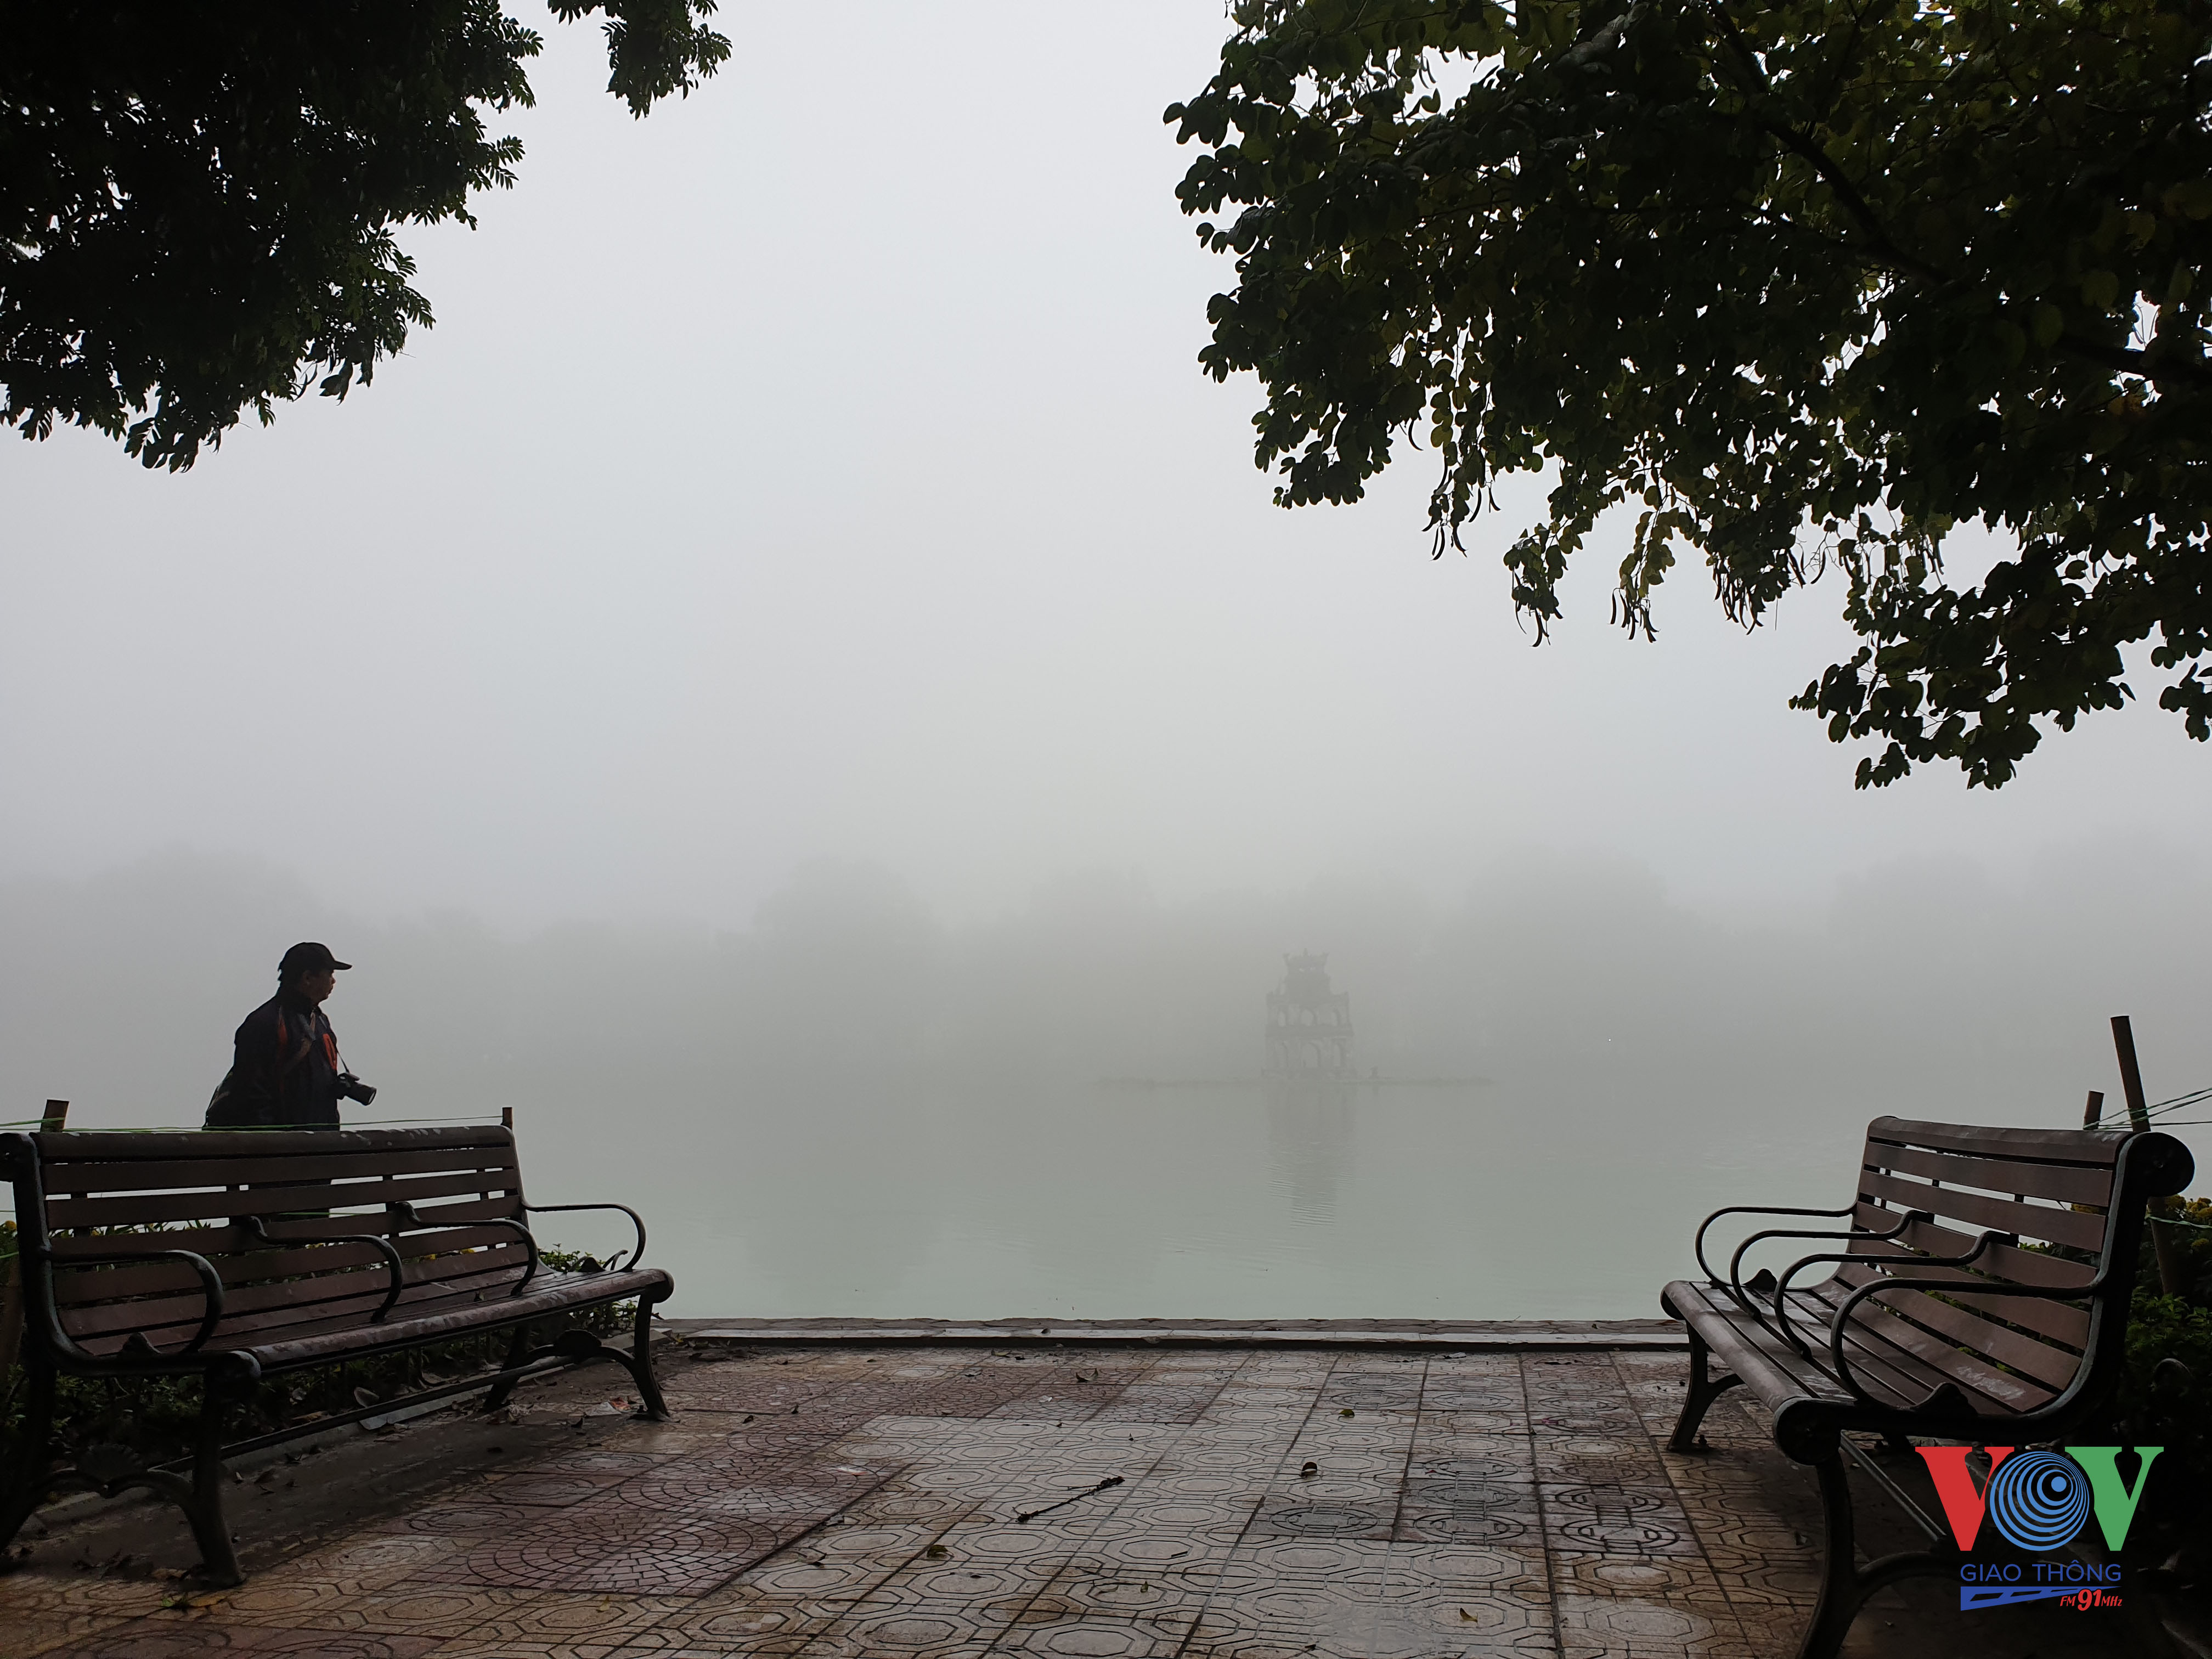 Những người đi tập thể dục quanh bờ hồ Hoàn Kiếm không thể nhìn rõ tháp rùa giữa hồ.